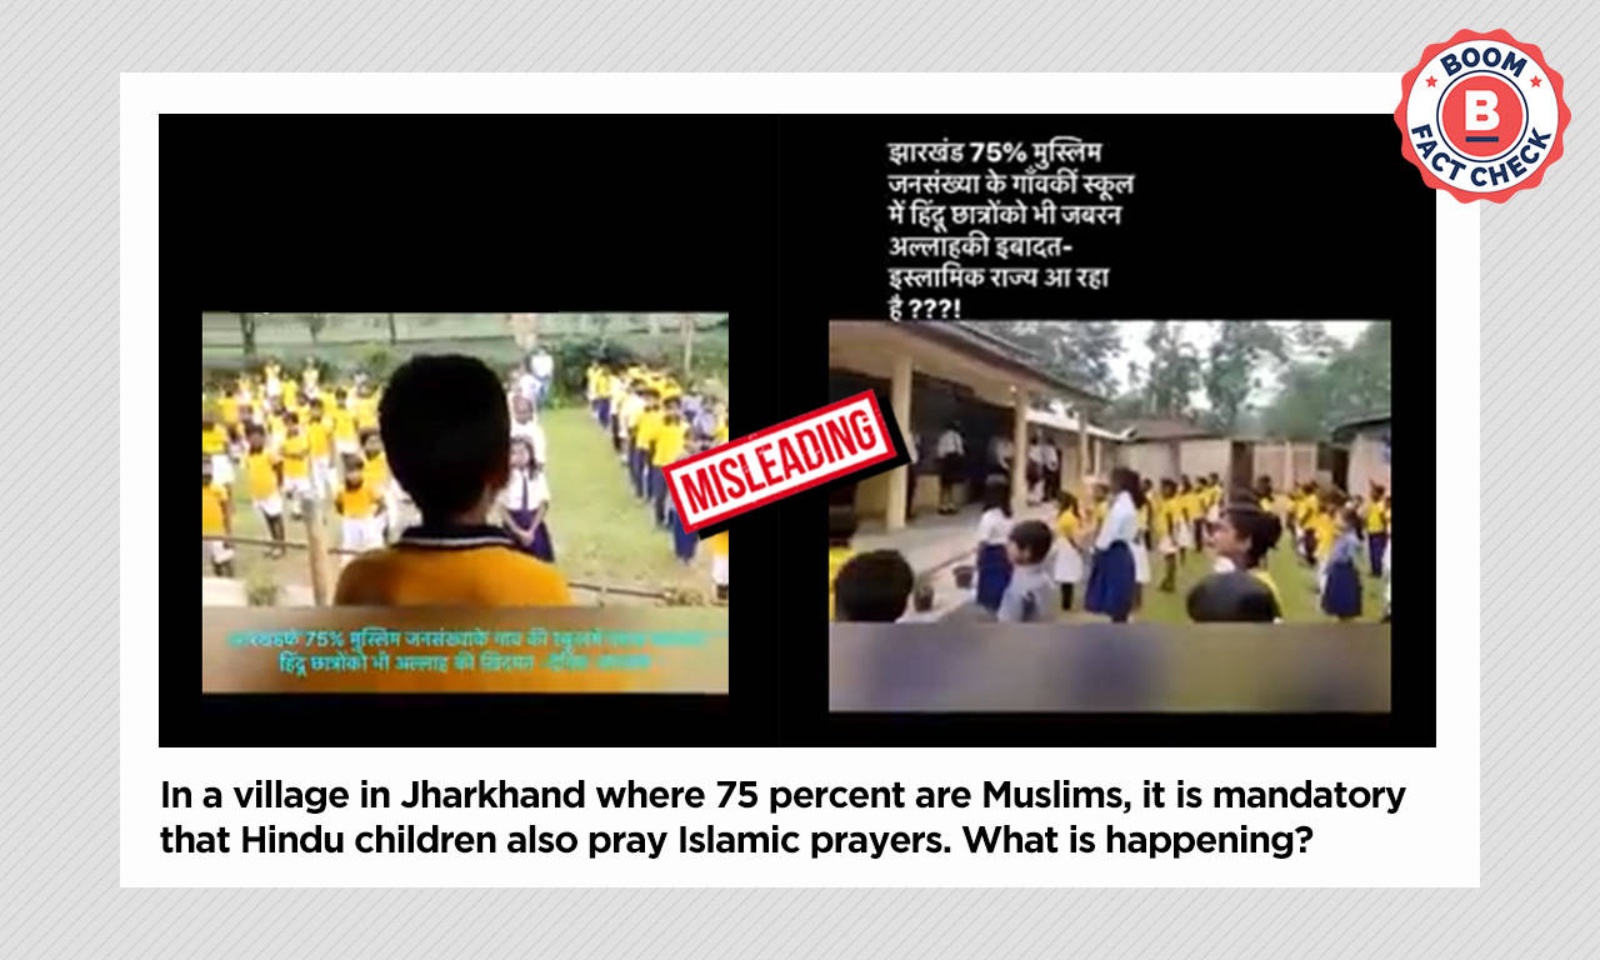 Assamschoolxxx - Video Of Student Reciting Azaan In Assam School Shared As Jharkhand | BOOM